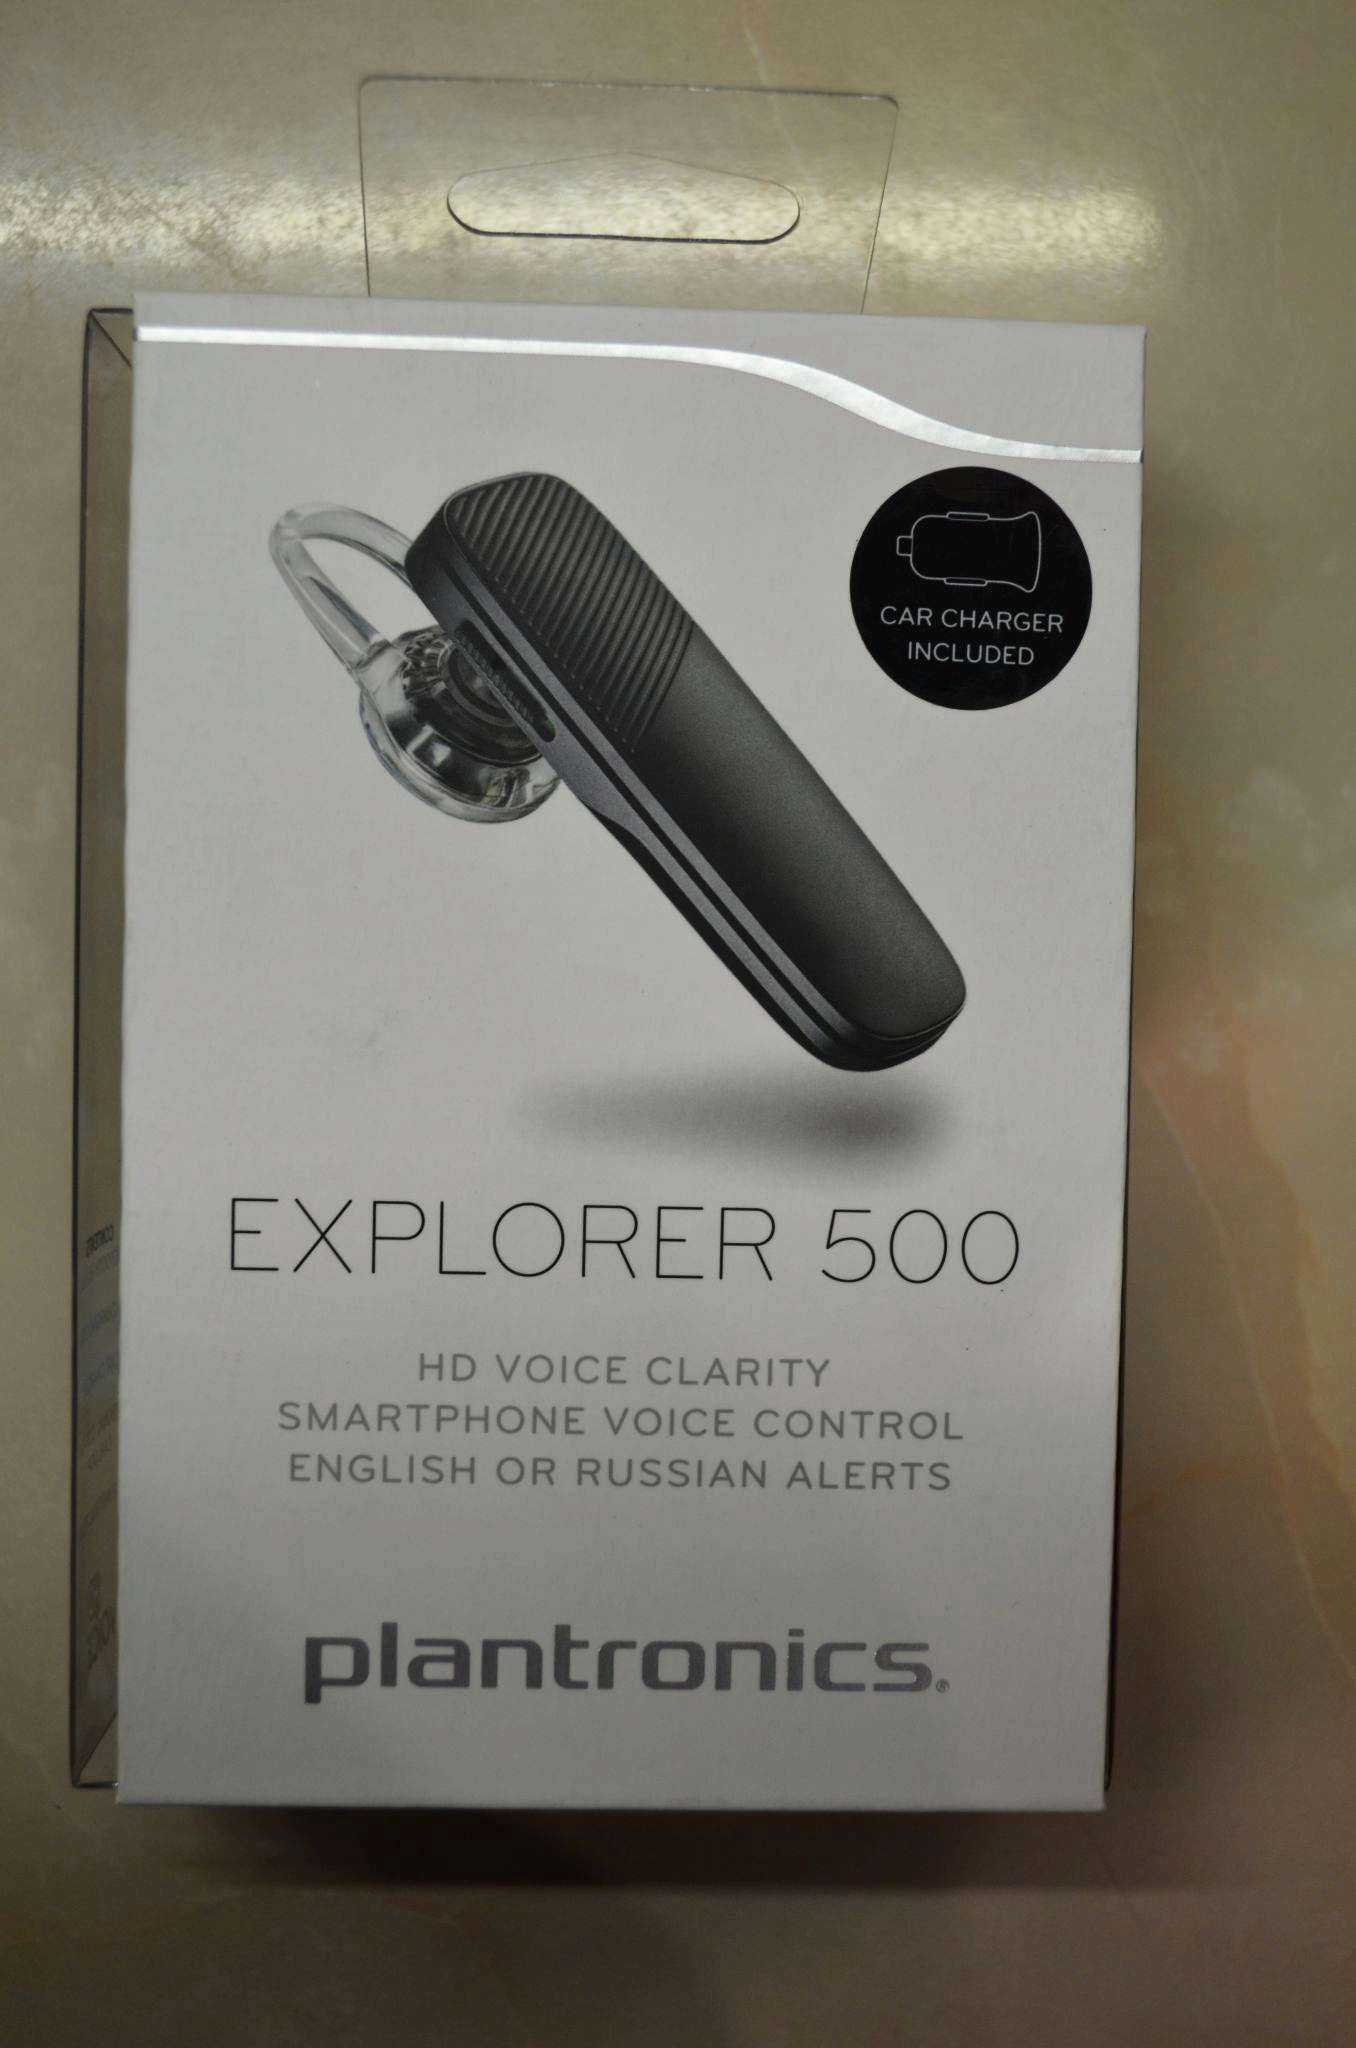 Plantronics Explorer 500 - короткий но максимально информативный обзор Для большего удобства добавлены характеристики отзывы и видео